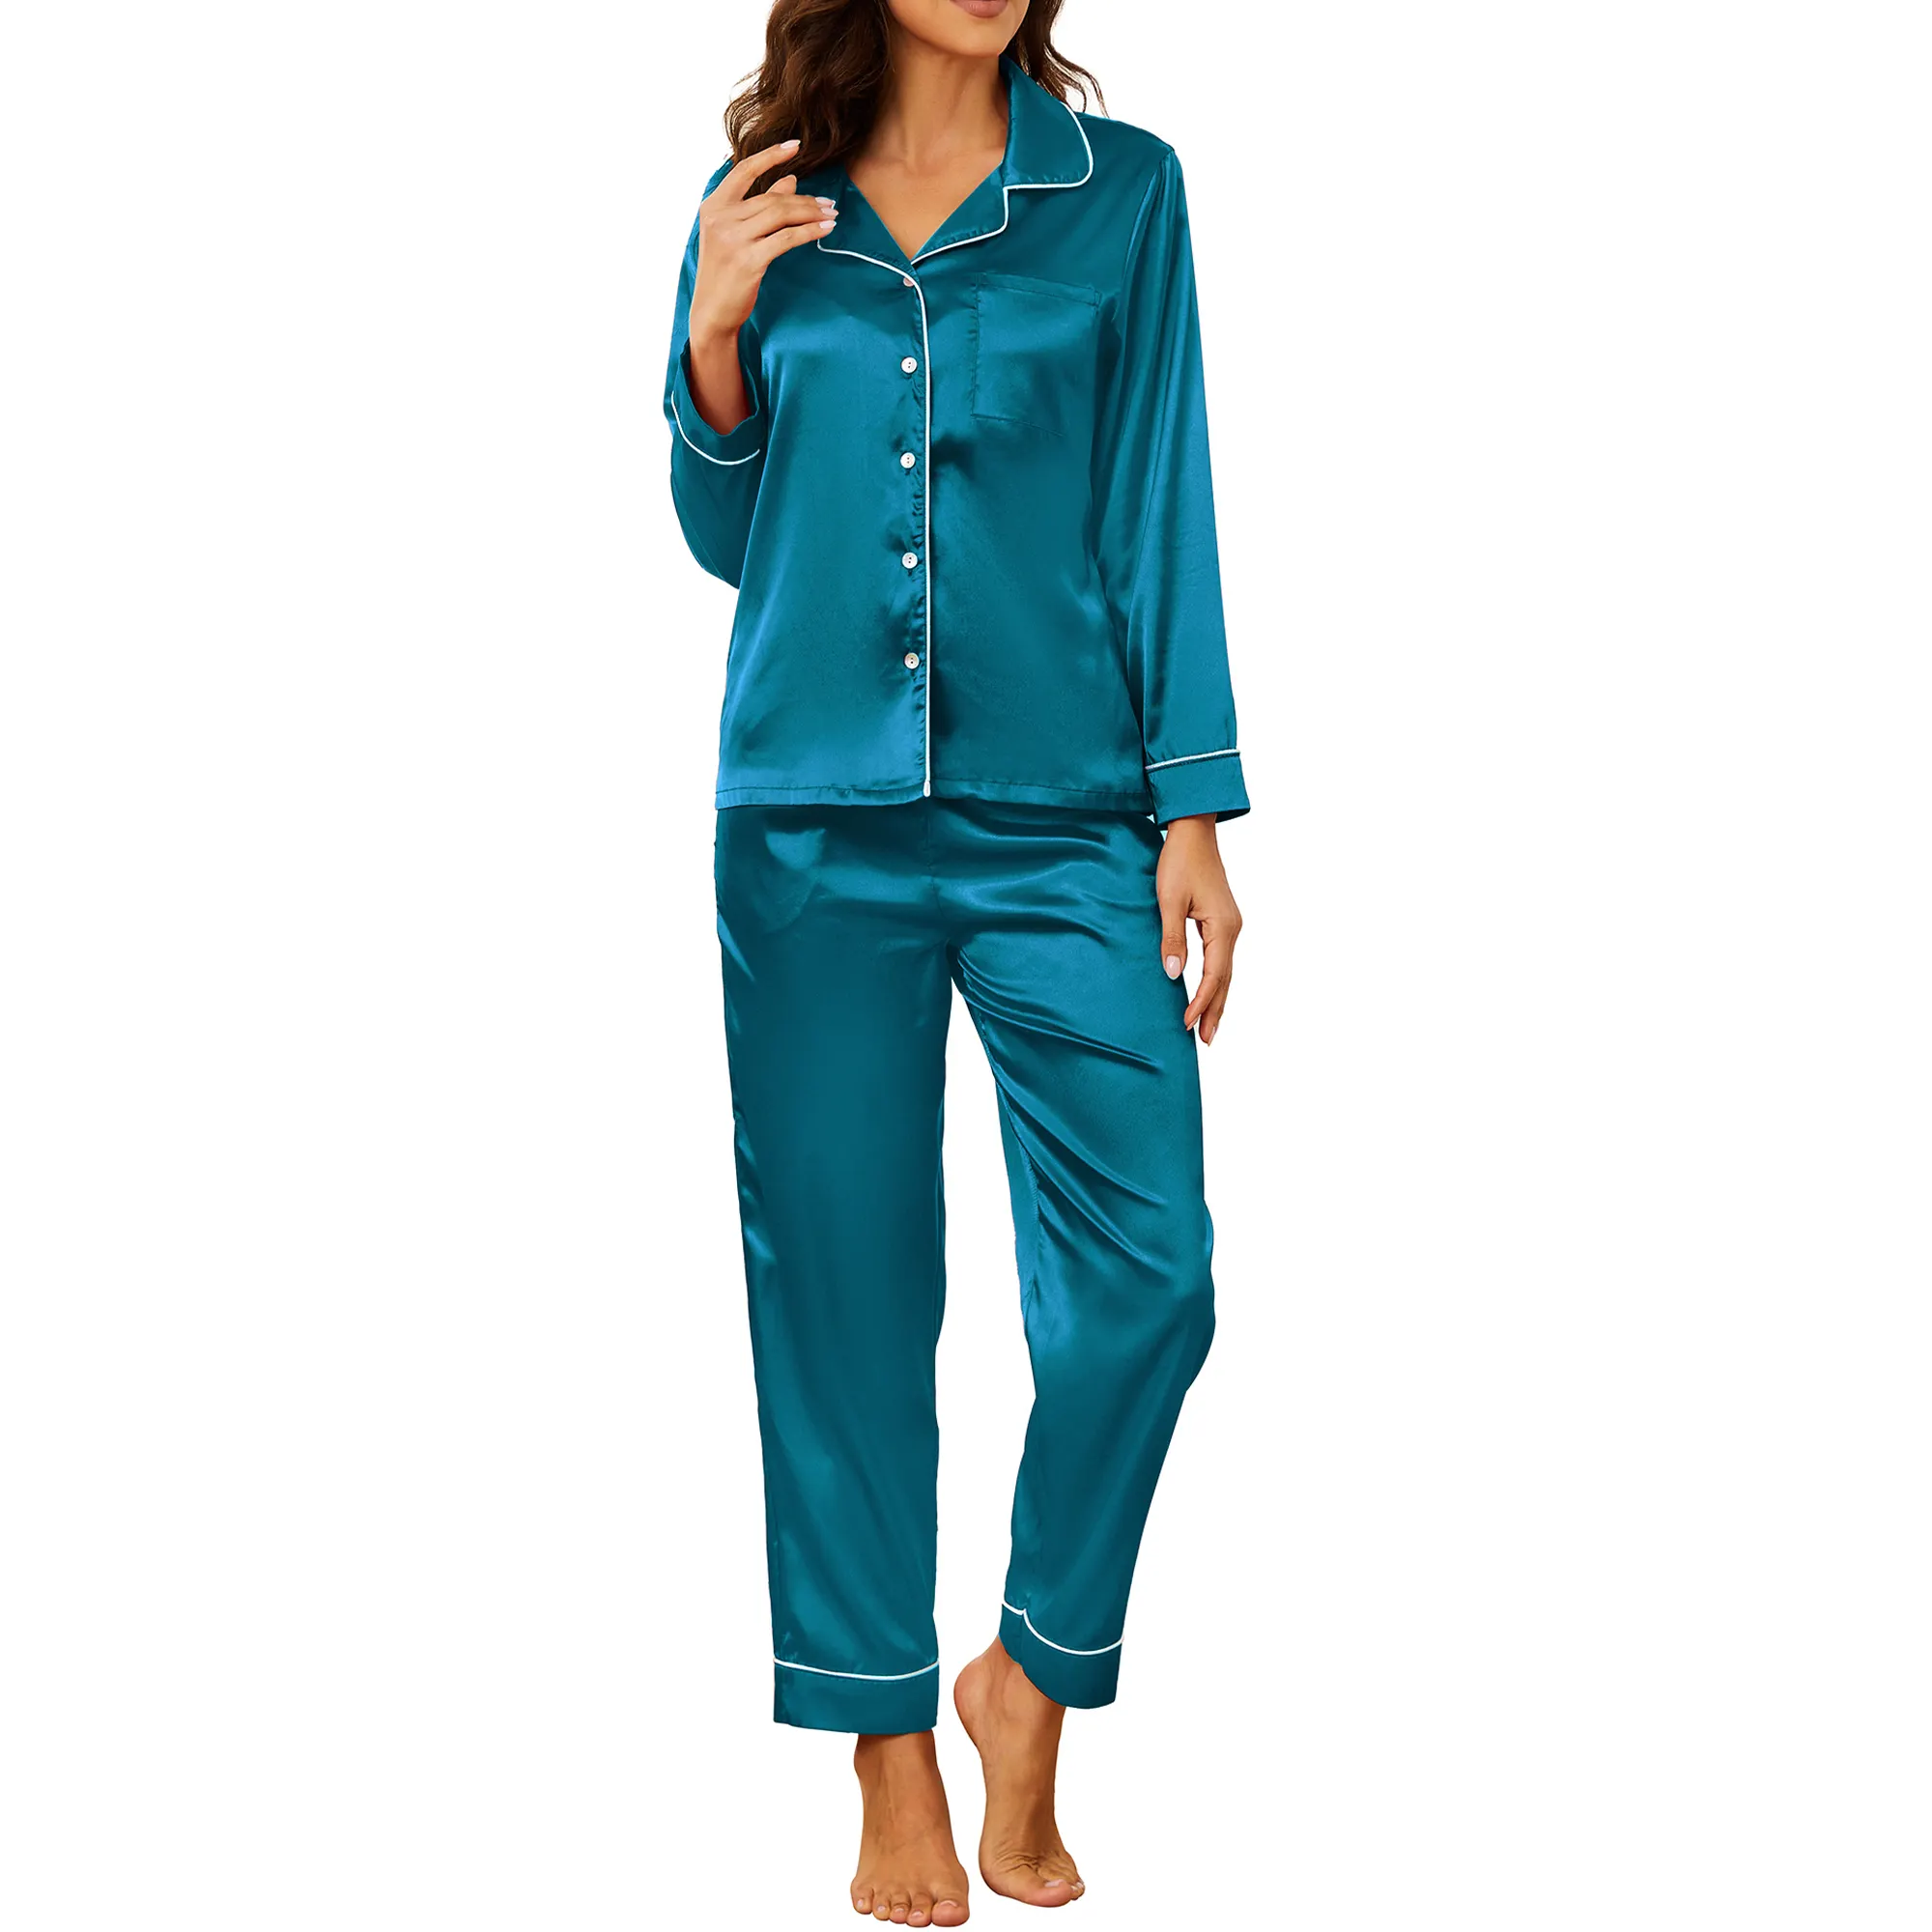 एमक्यूएफ हॉट सेलिंग लक्जरी पजामा सूट महिलाओं के लिए स्लीपवियर साटन रेशम महिलाओं के लिए ठोस रंग चिकना पजामा सेट